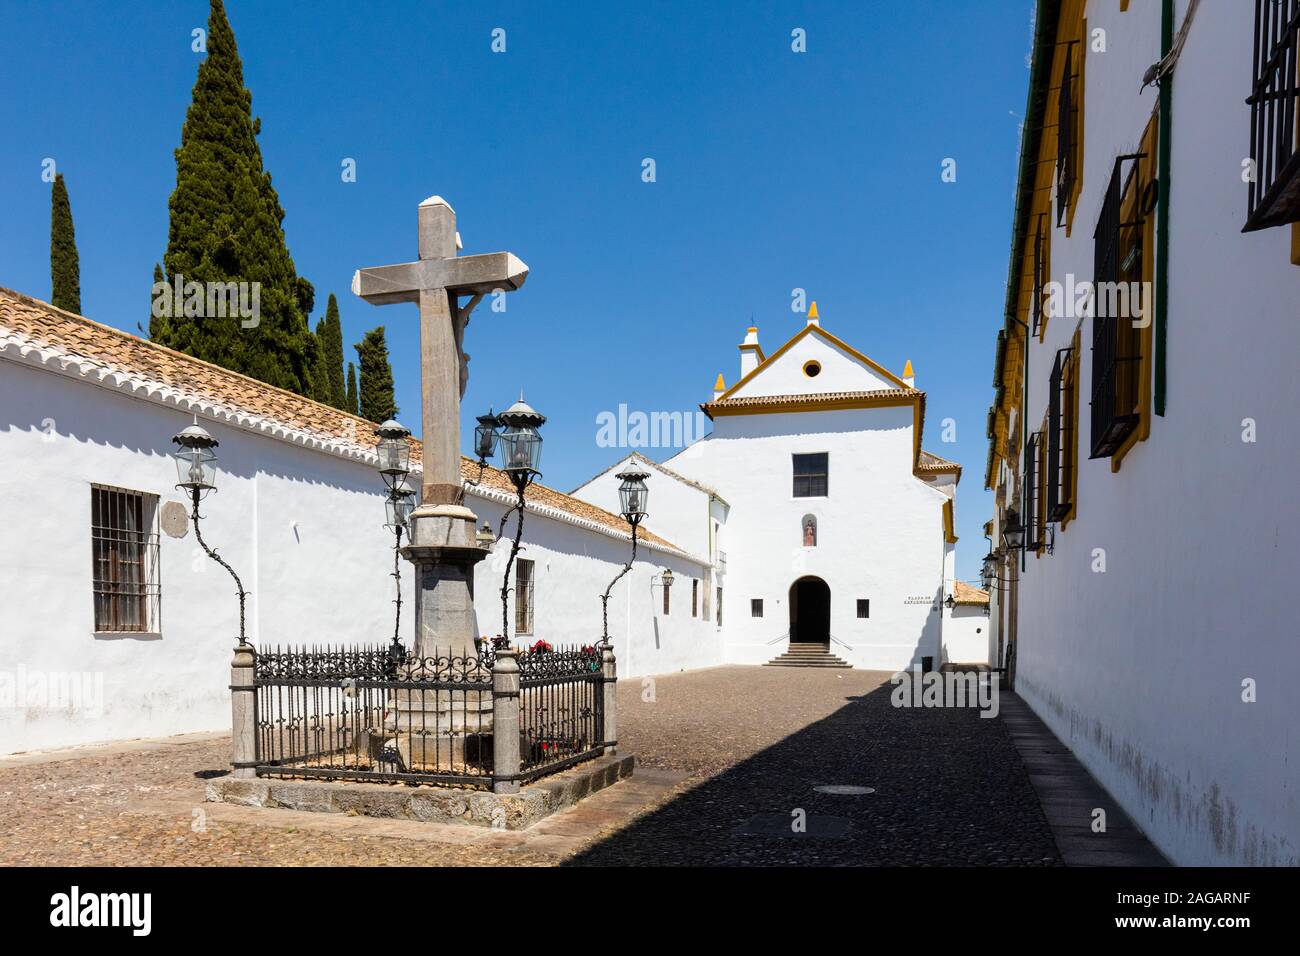 Die Statue von Christus der Laternen in der Plaza de Capuchinos in Cordoba, Andalusien Spanien Stockfoto